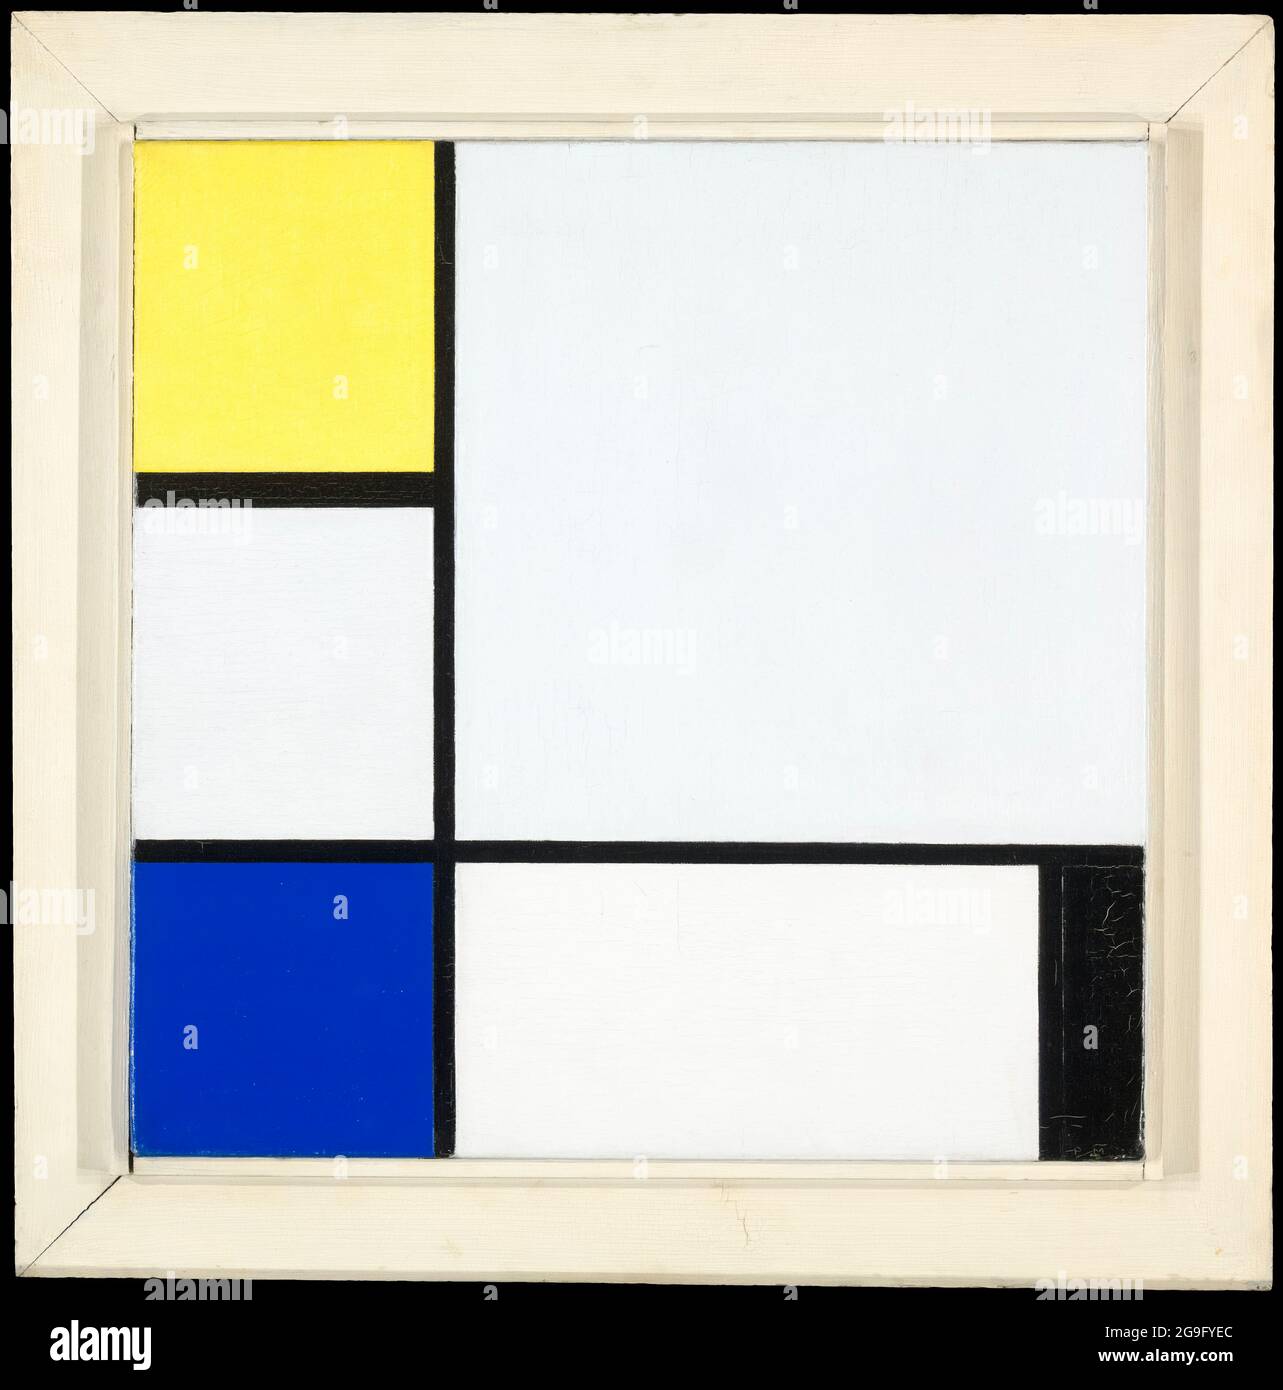 Piet Mondrian (Piet Mondriaan), composition avec jaune, bleu, noir et bleu clair, peinture abstraite, 1929 Banque D'Images